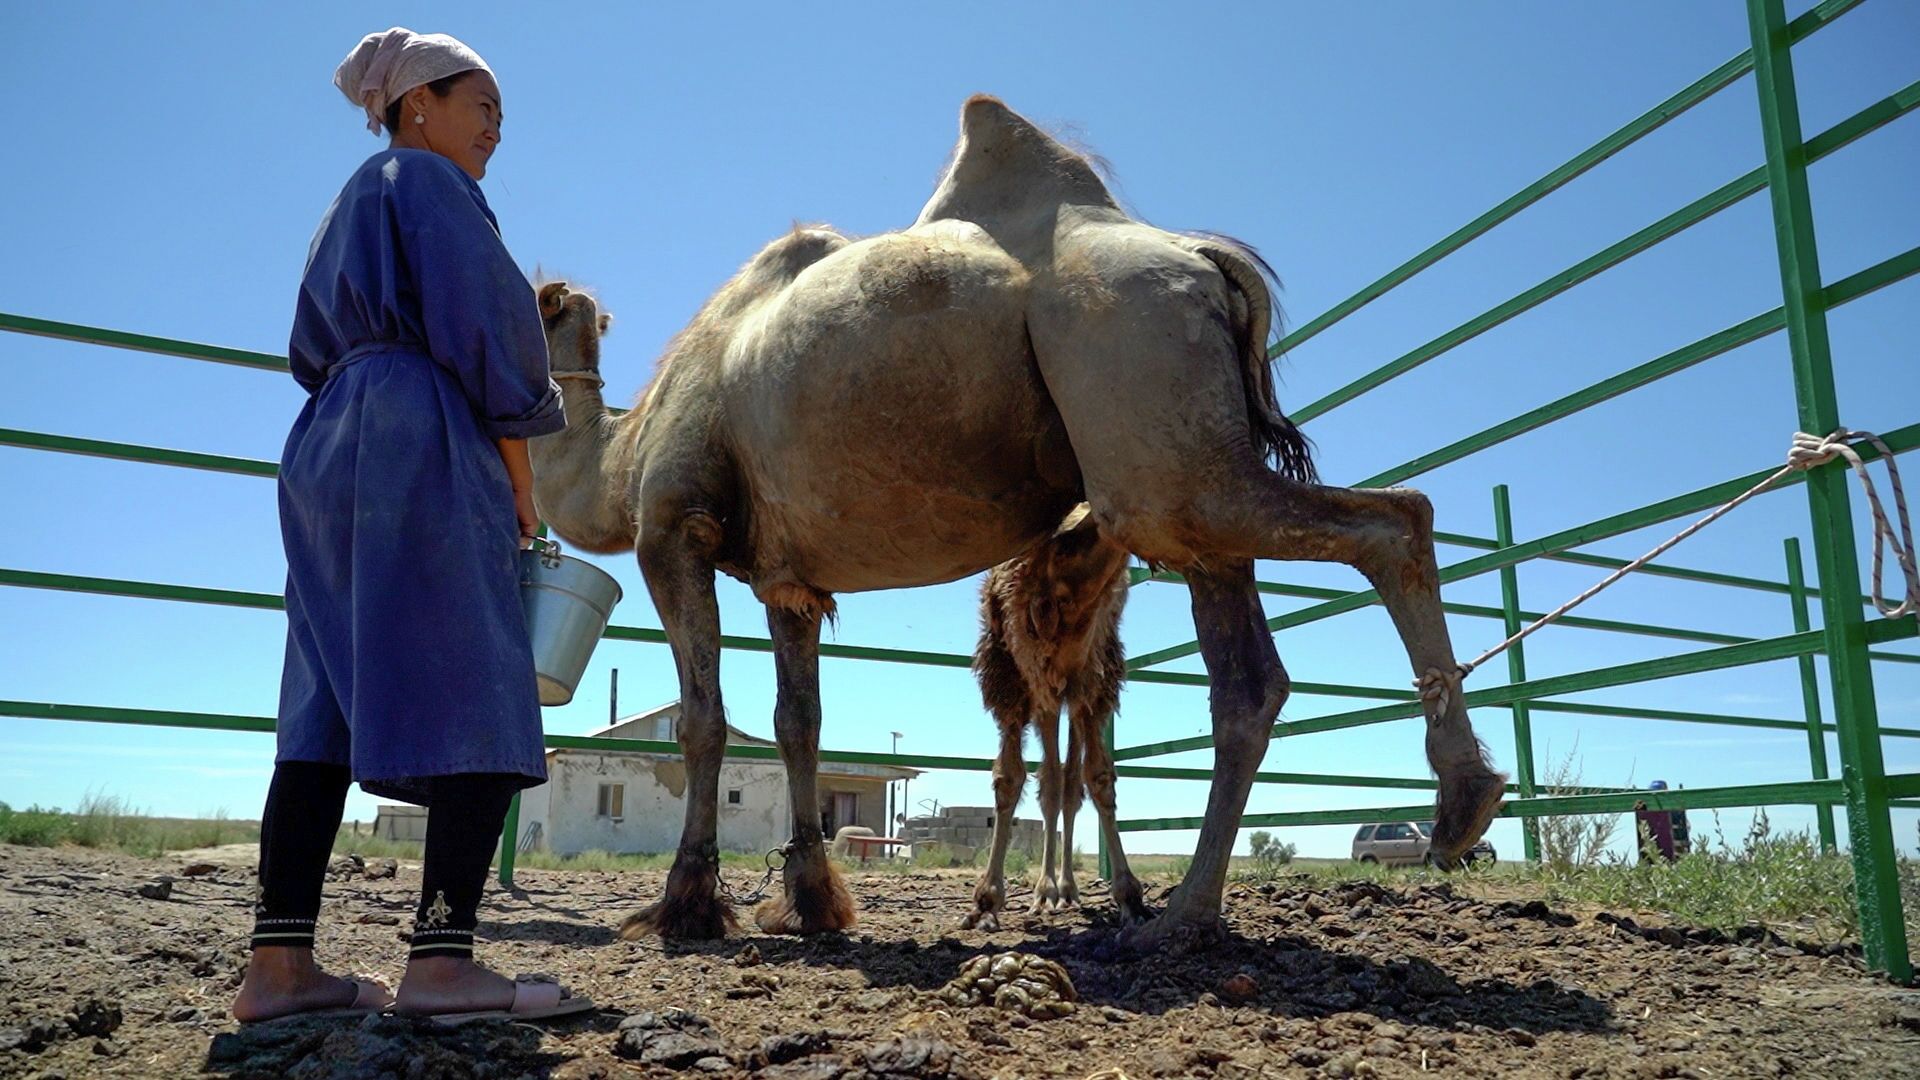 Реки шубата: путешествие на верблюжью ферму в Казахстане - Sputnik Казахстан, 1920, 30.06.2021